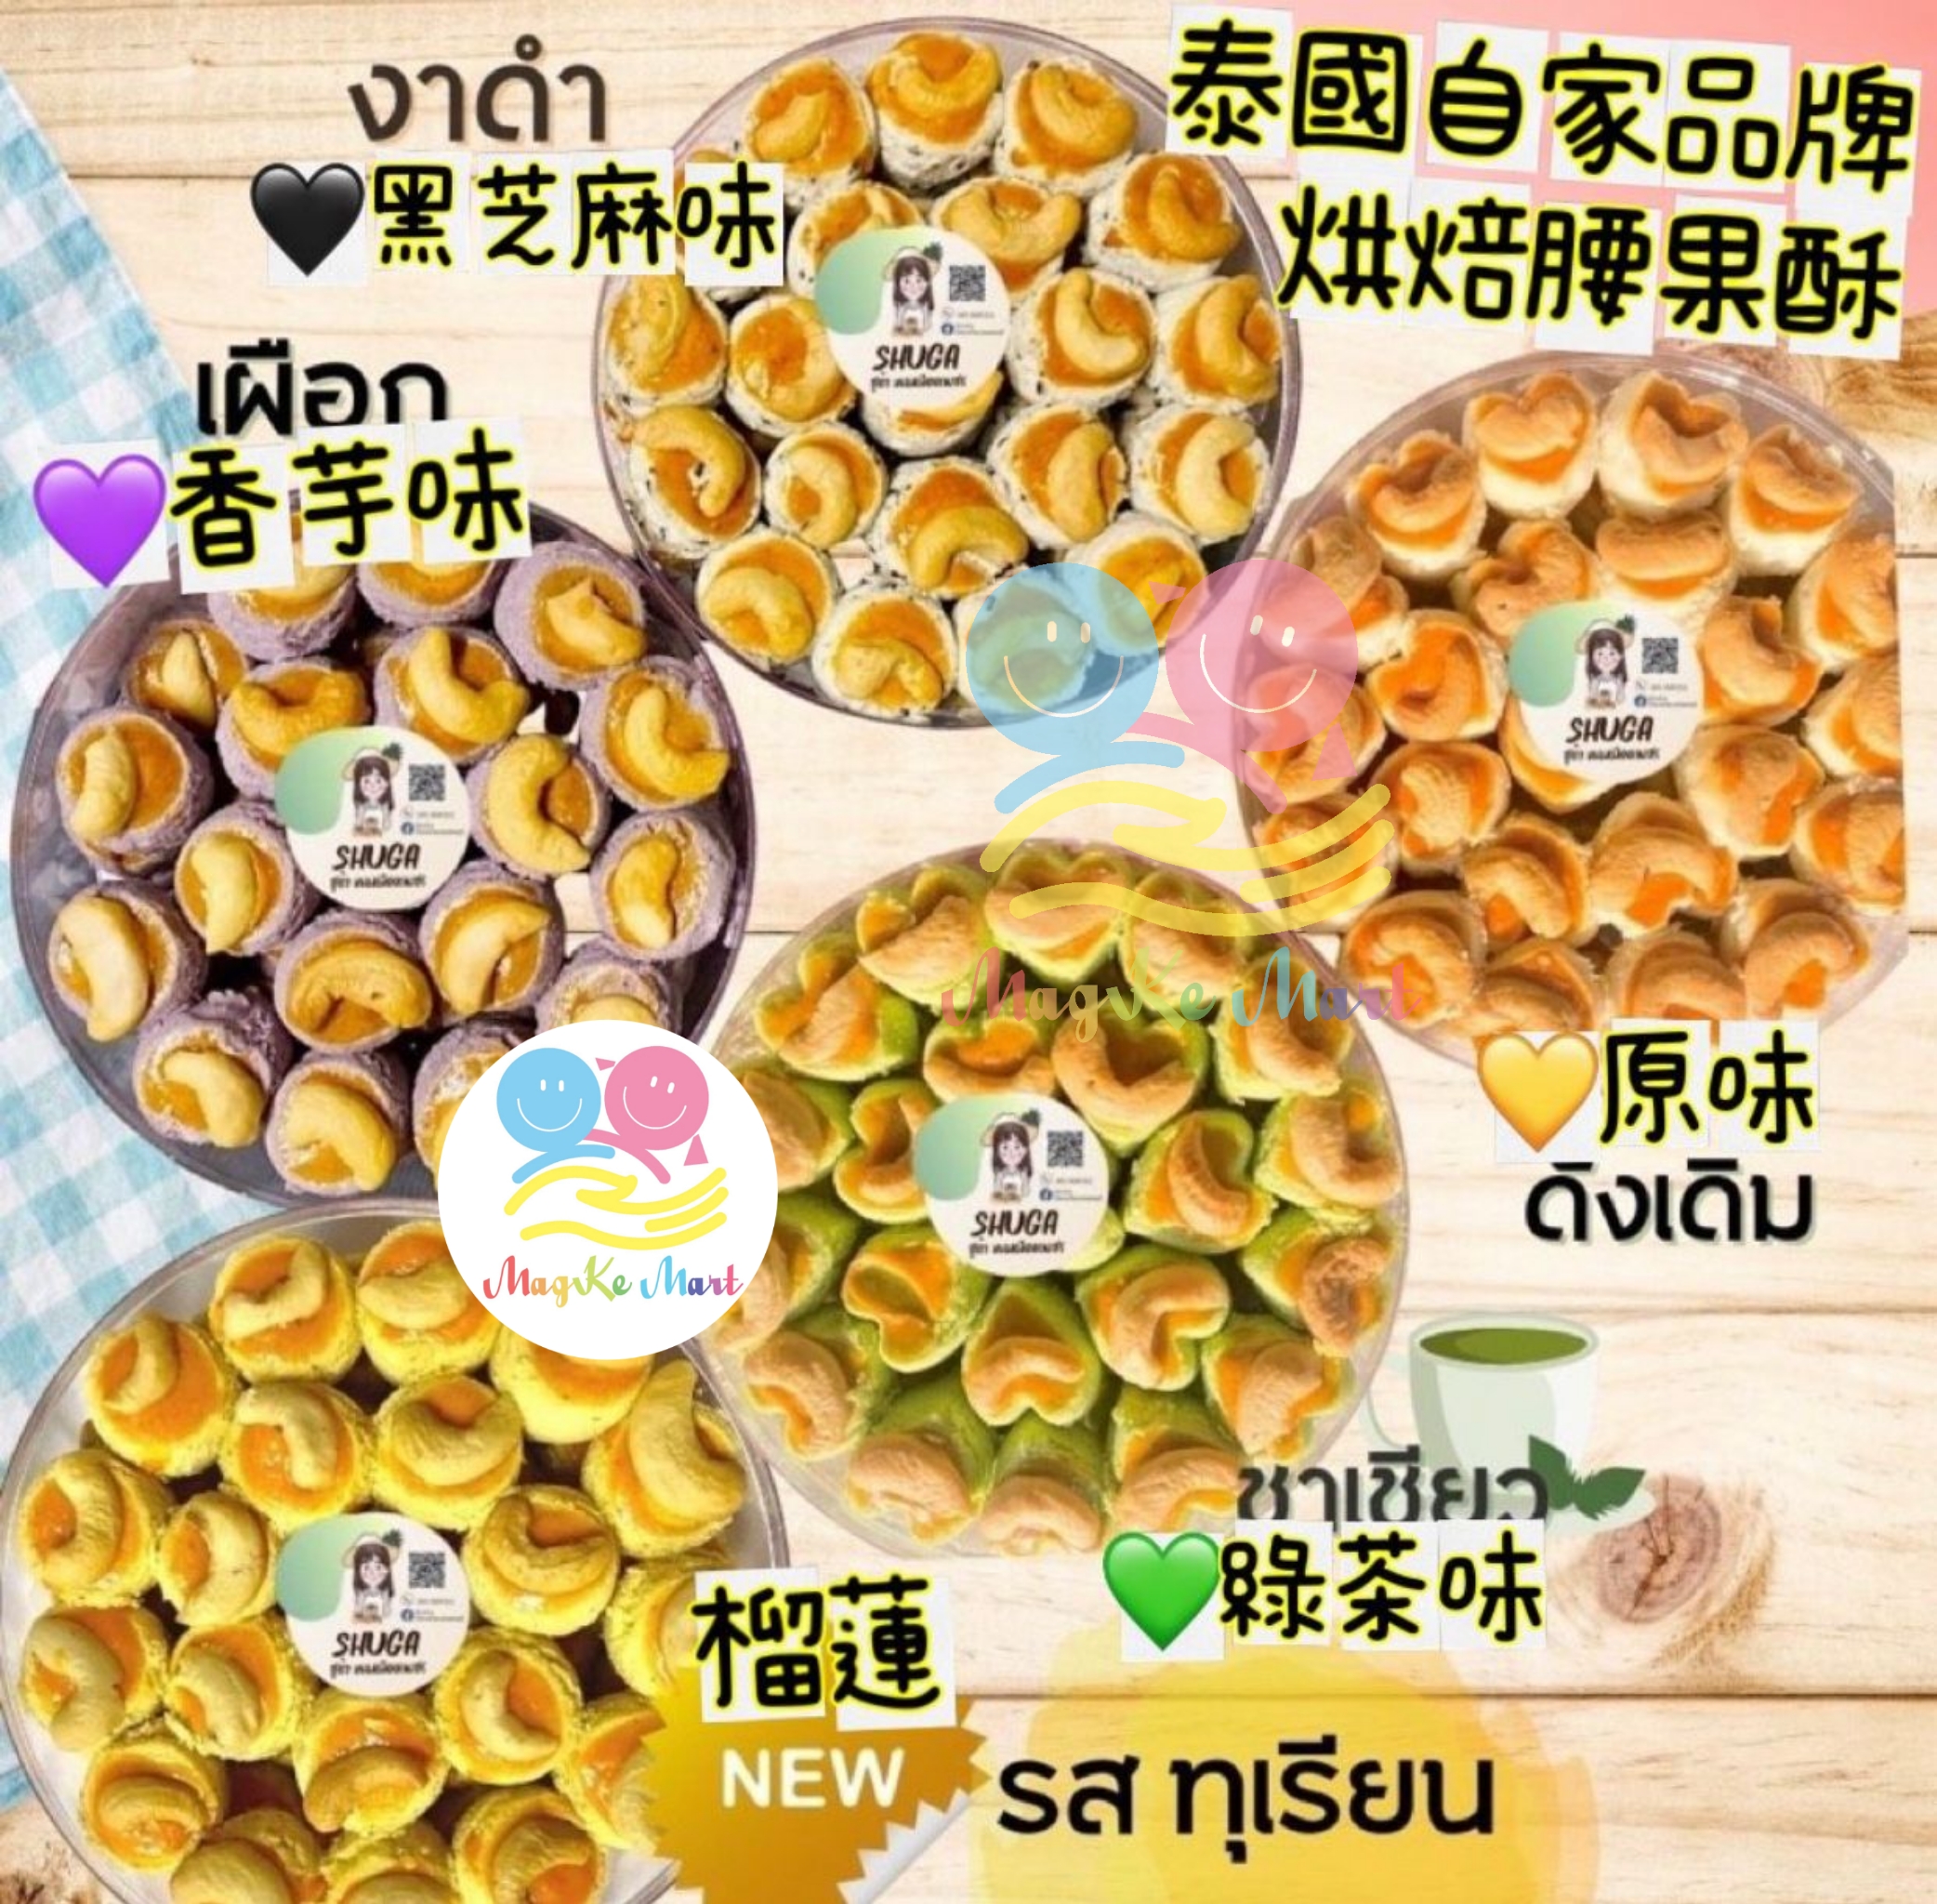 泰國自家品牌烘焙腰果酥(約230g) (E) 榴槤